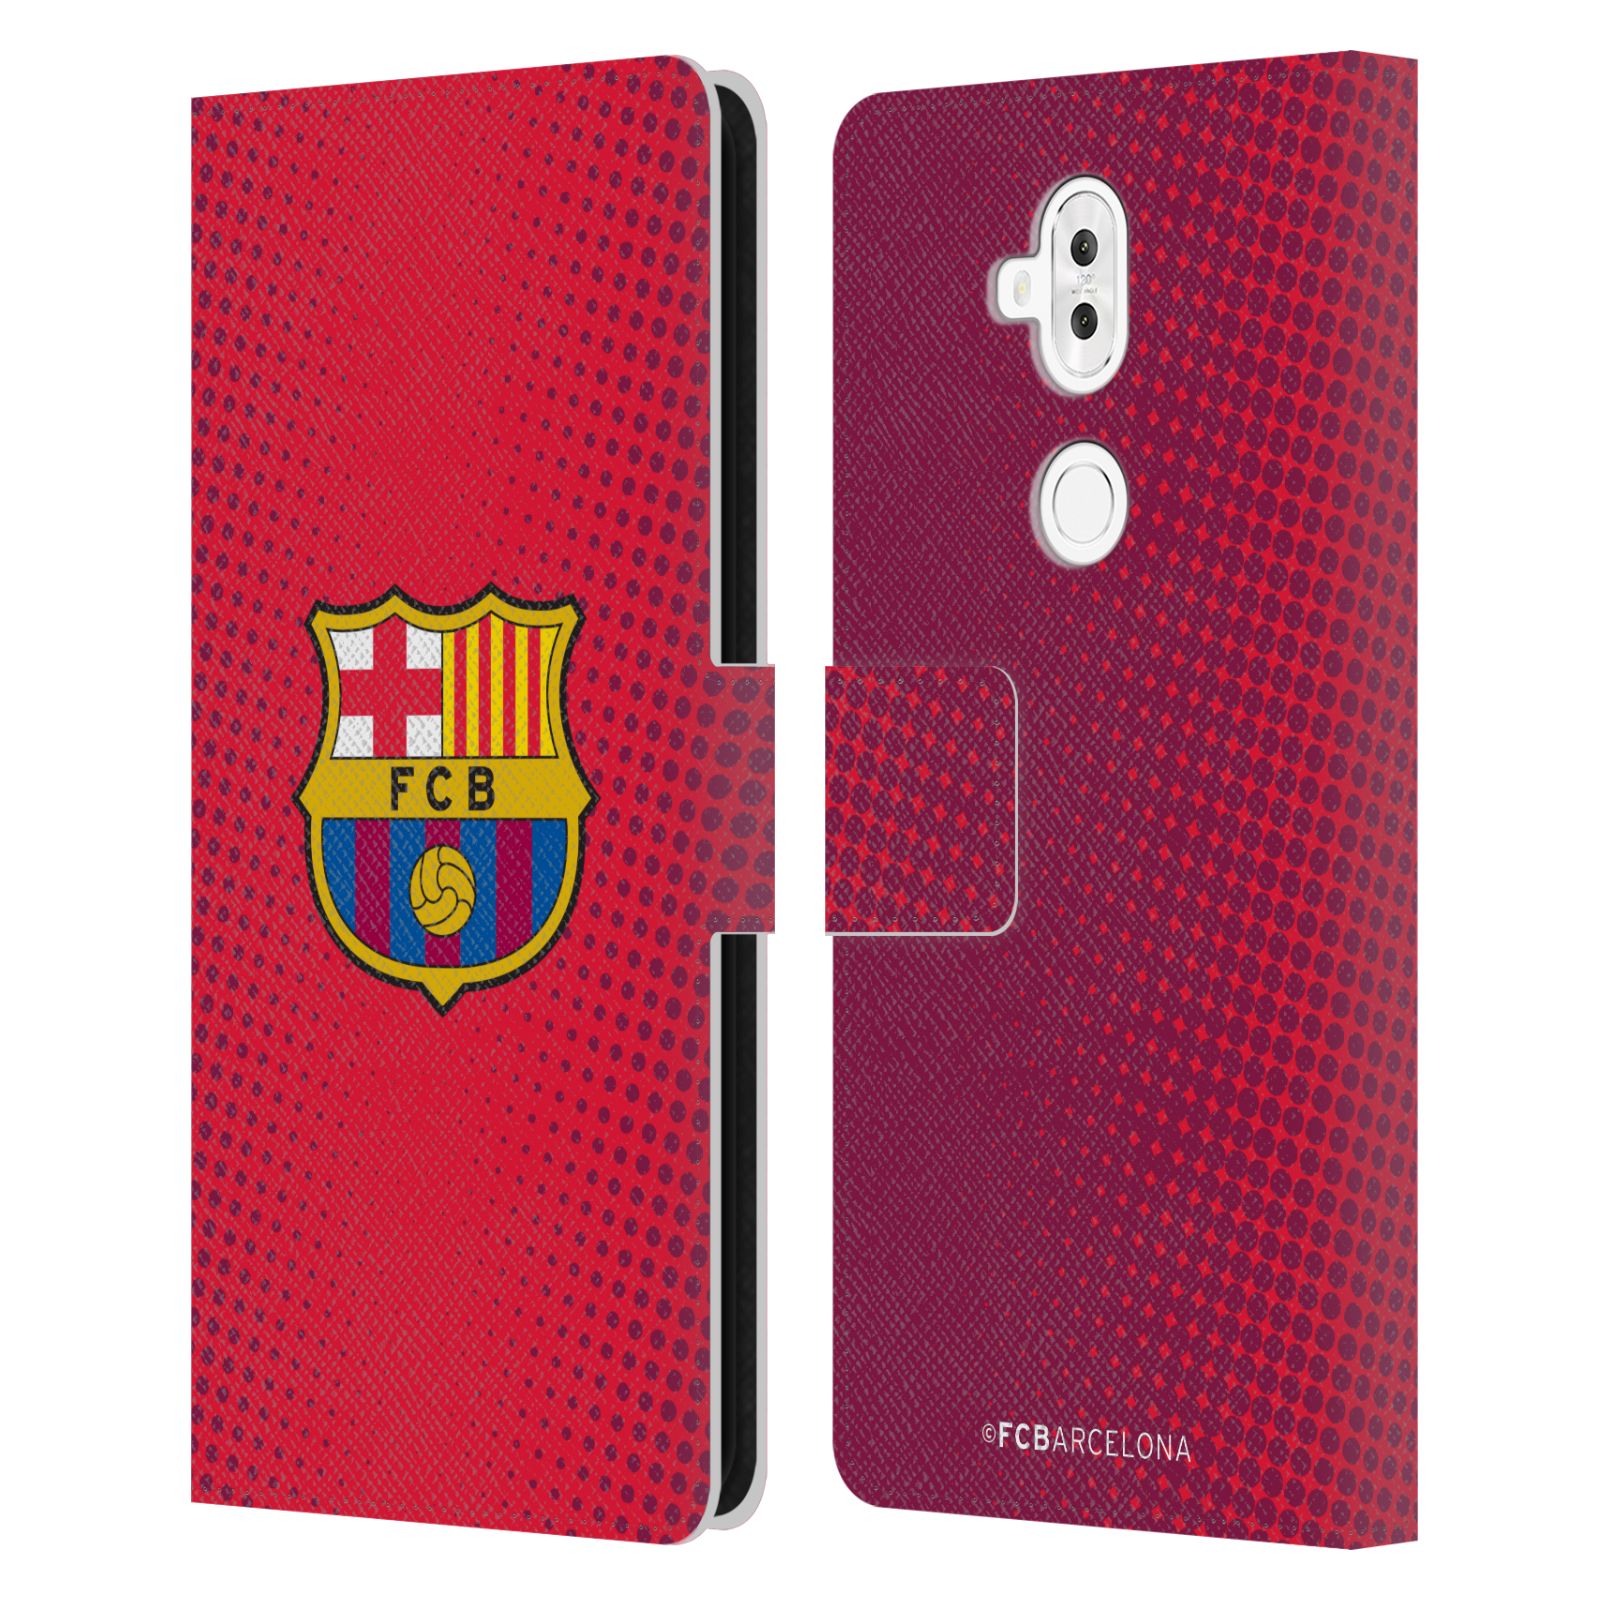 Pouzdro na mobil Asus Zenfone 5 Lite ZC600KL  - HEAD CASE - FC Barcelona - Tečky červená